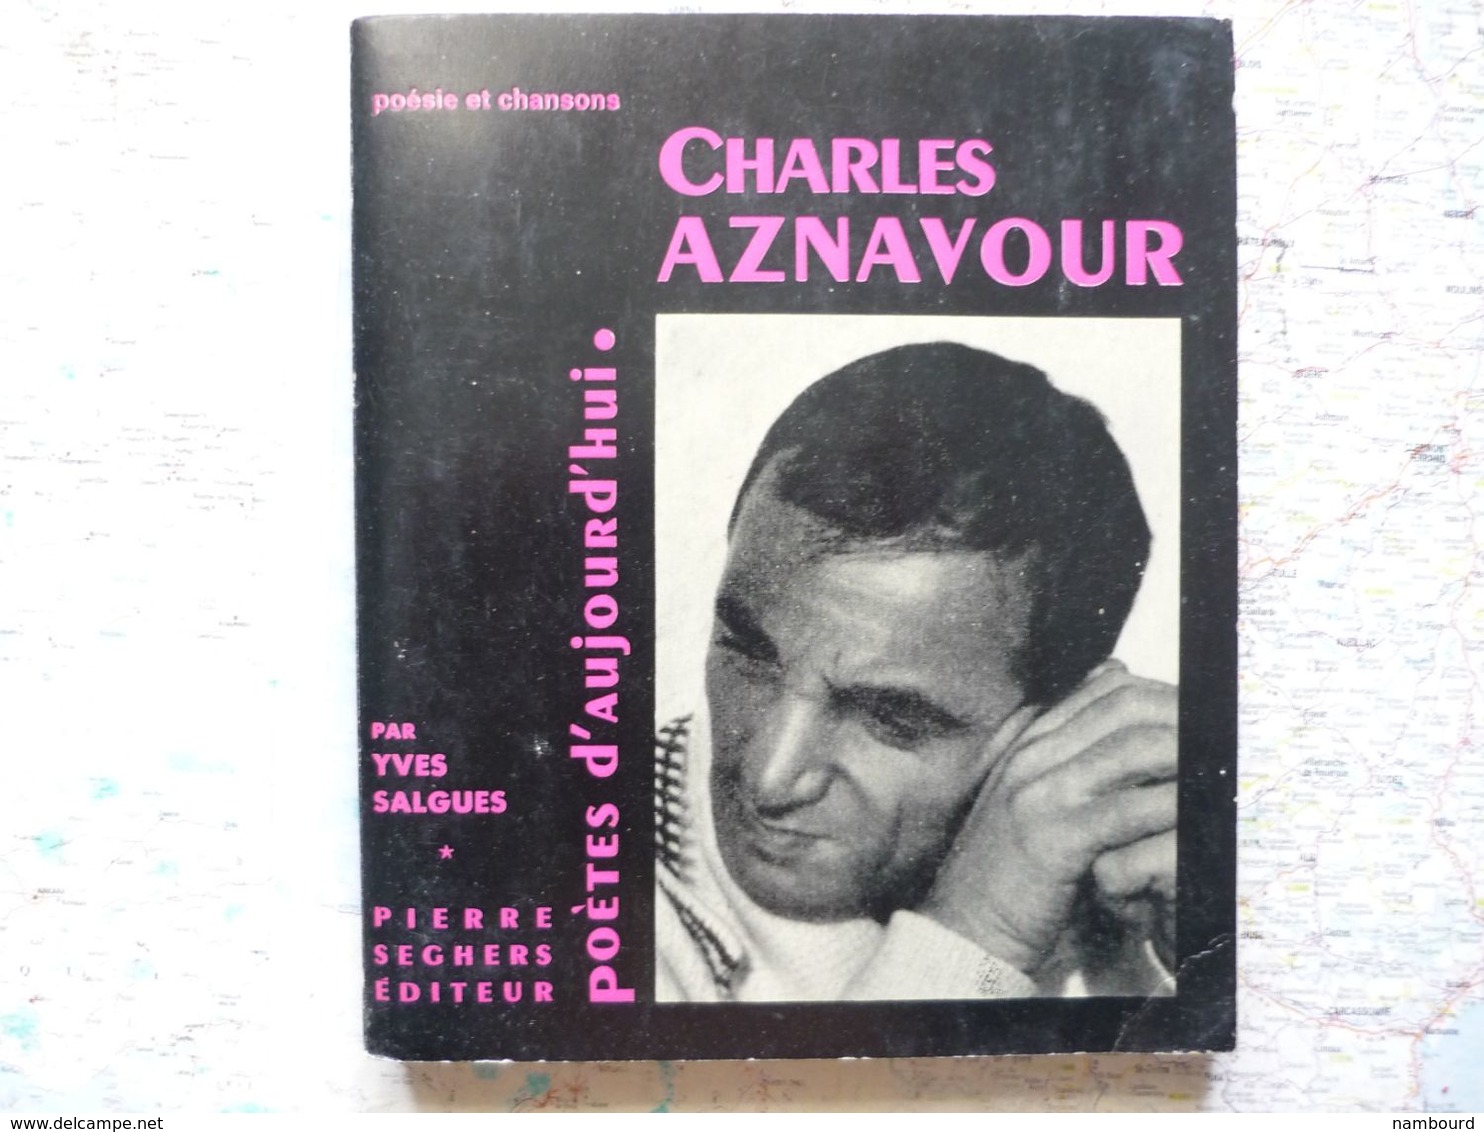 Poésie Et Chansons Seghers éditeur Chansons D'aujourd'hui Charles Aznavour Par Yves Salgues 1964 Avec Dédicace Y.Salgues - Franse Schrijvers